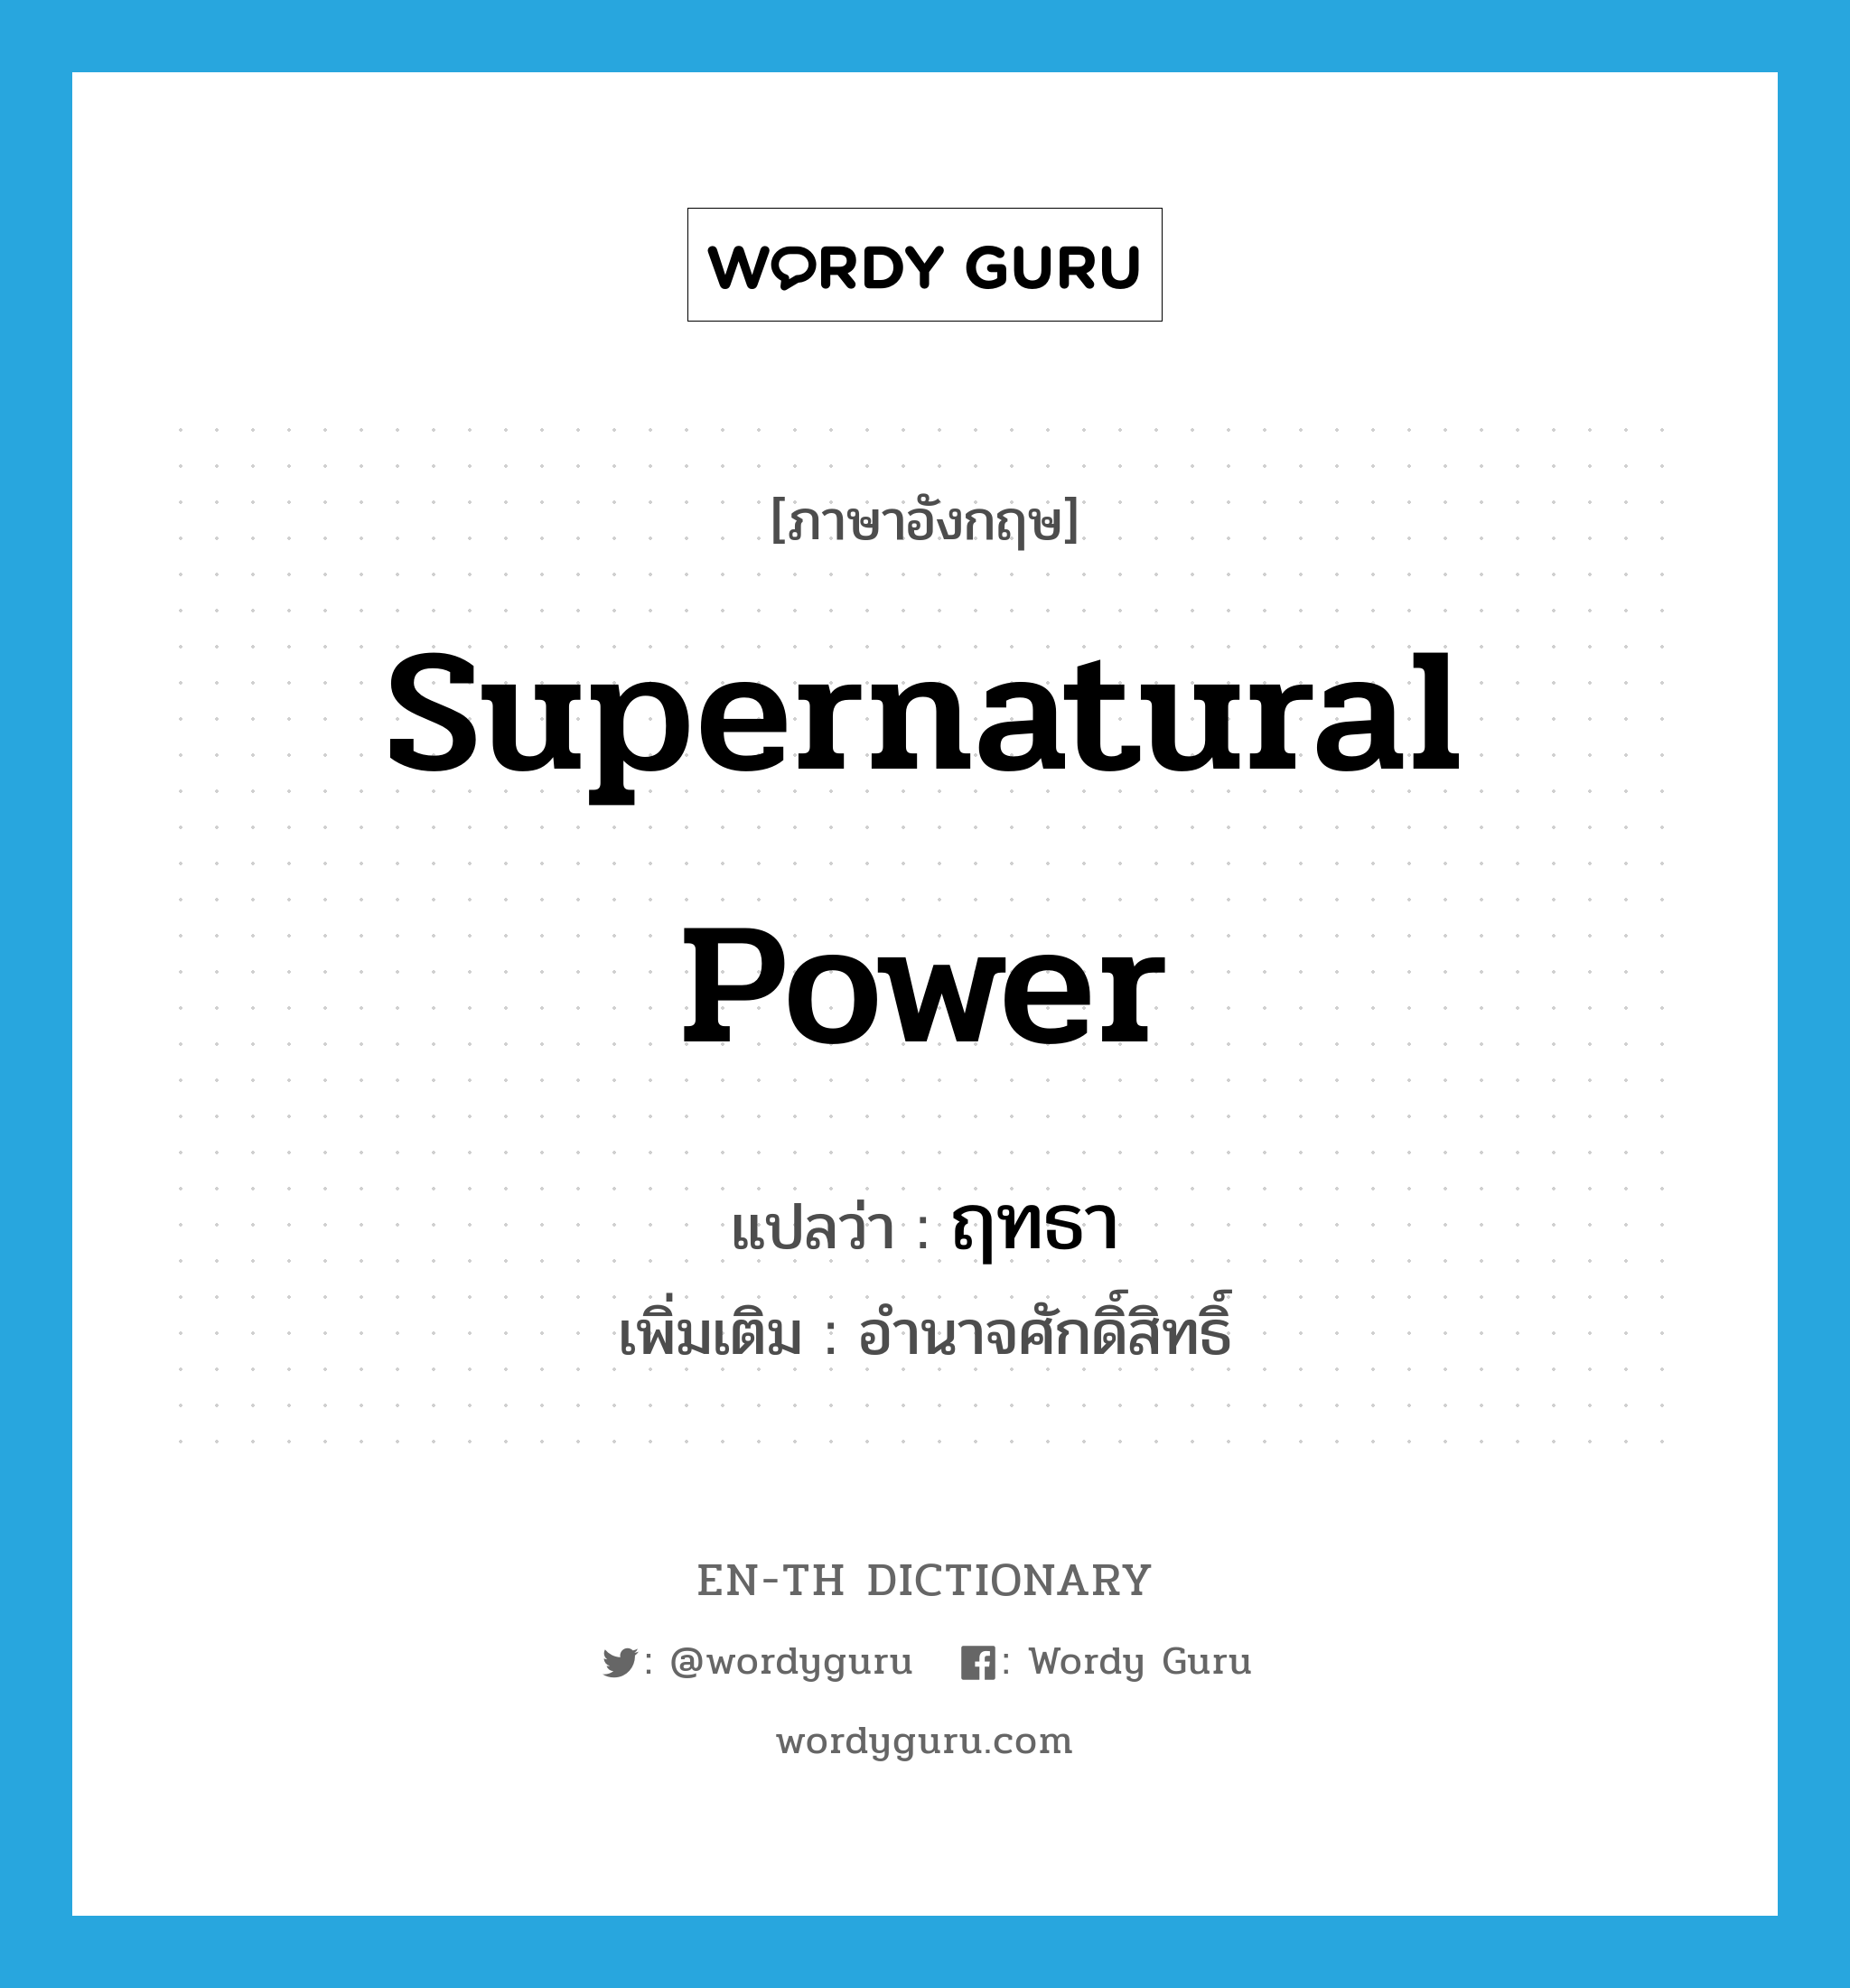 supernatural power แปลว่า?, คำศัพท์ภาษาอังกฤษ supernatural power แปลว่า ฤทธา ประเภท N เพิ่มเติม อำนาจศักดิ์สิทธิ์ หมวด N